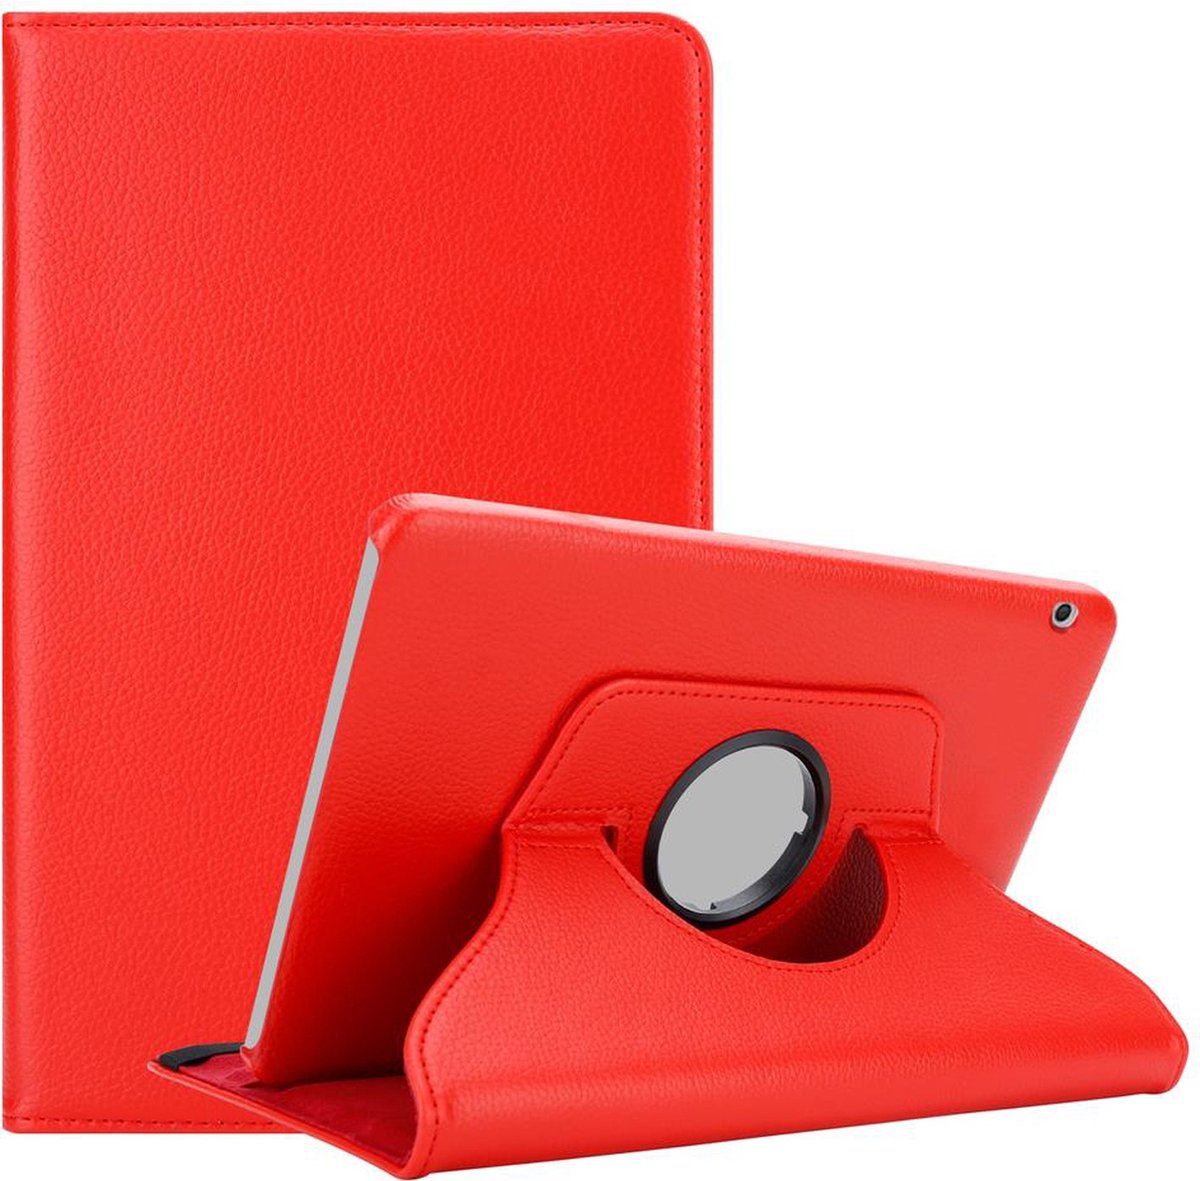 Cadorabo Tablet Hoesje voor Huawei MediaPad T3 10 (9.6 inch) in KLAPROOS ROOD - Beschermhoes ZONDER auto Wake Up, met stand functie en elastische band sluiting Book Case Cover Etui